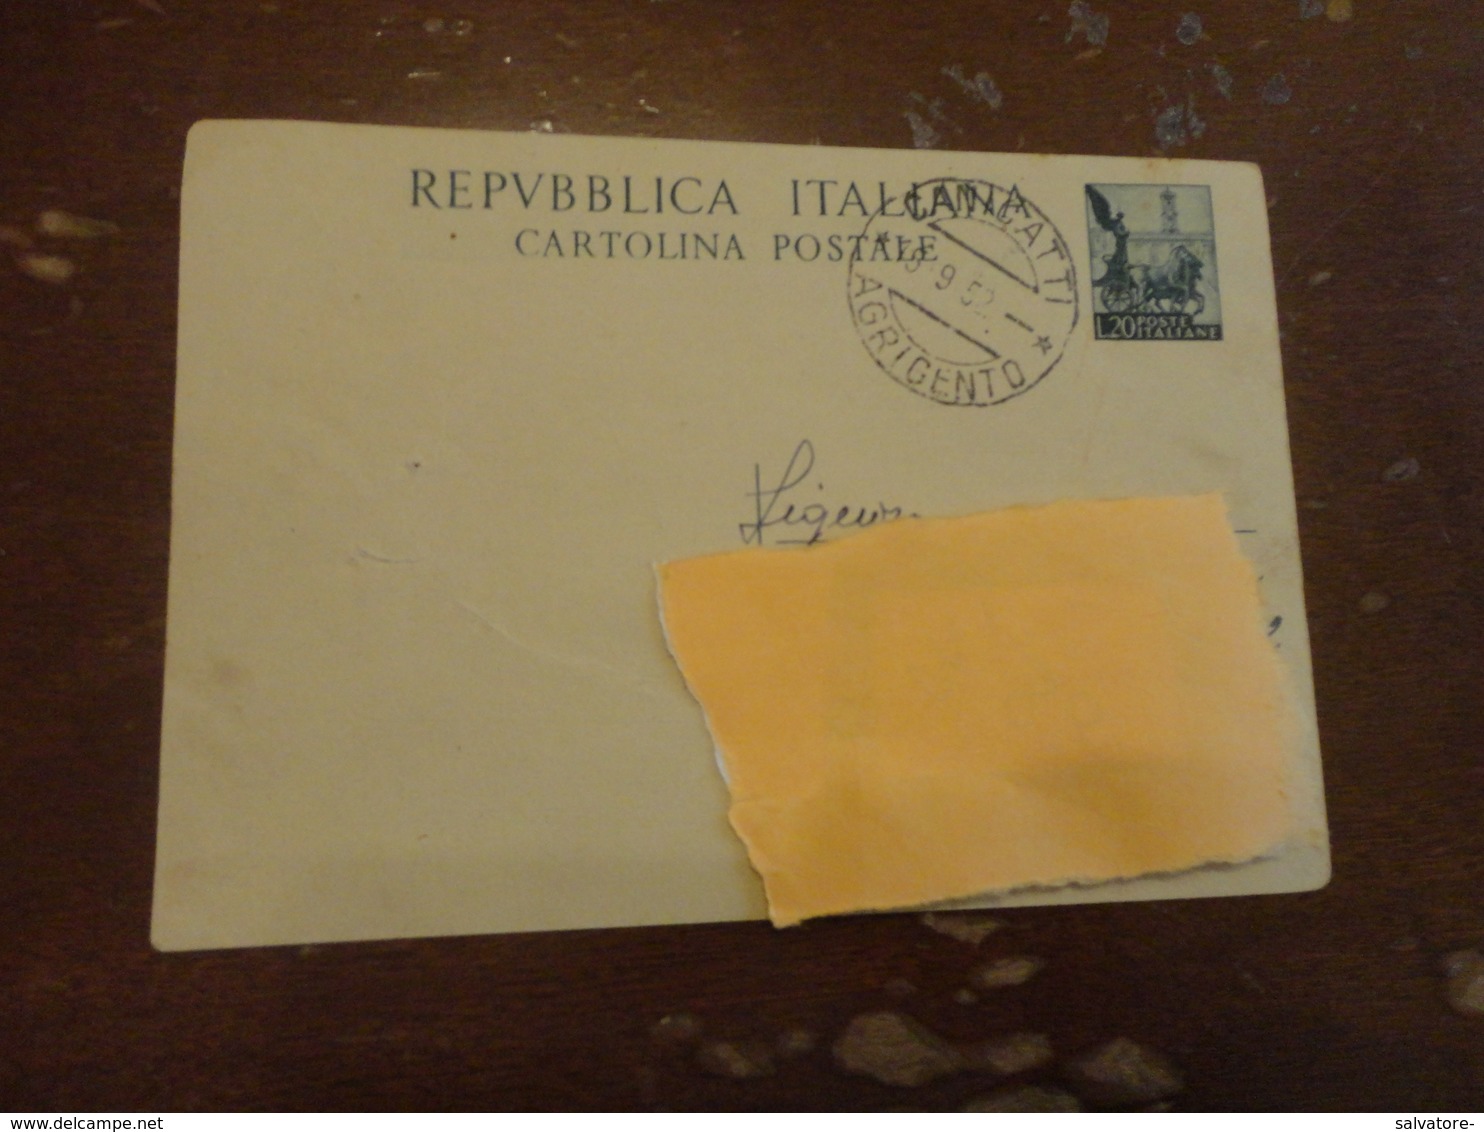 CARTOLINA POSTALE LIRE 20-1952 - Interi Postali